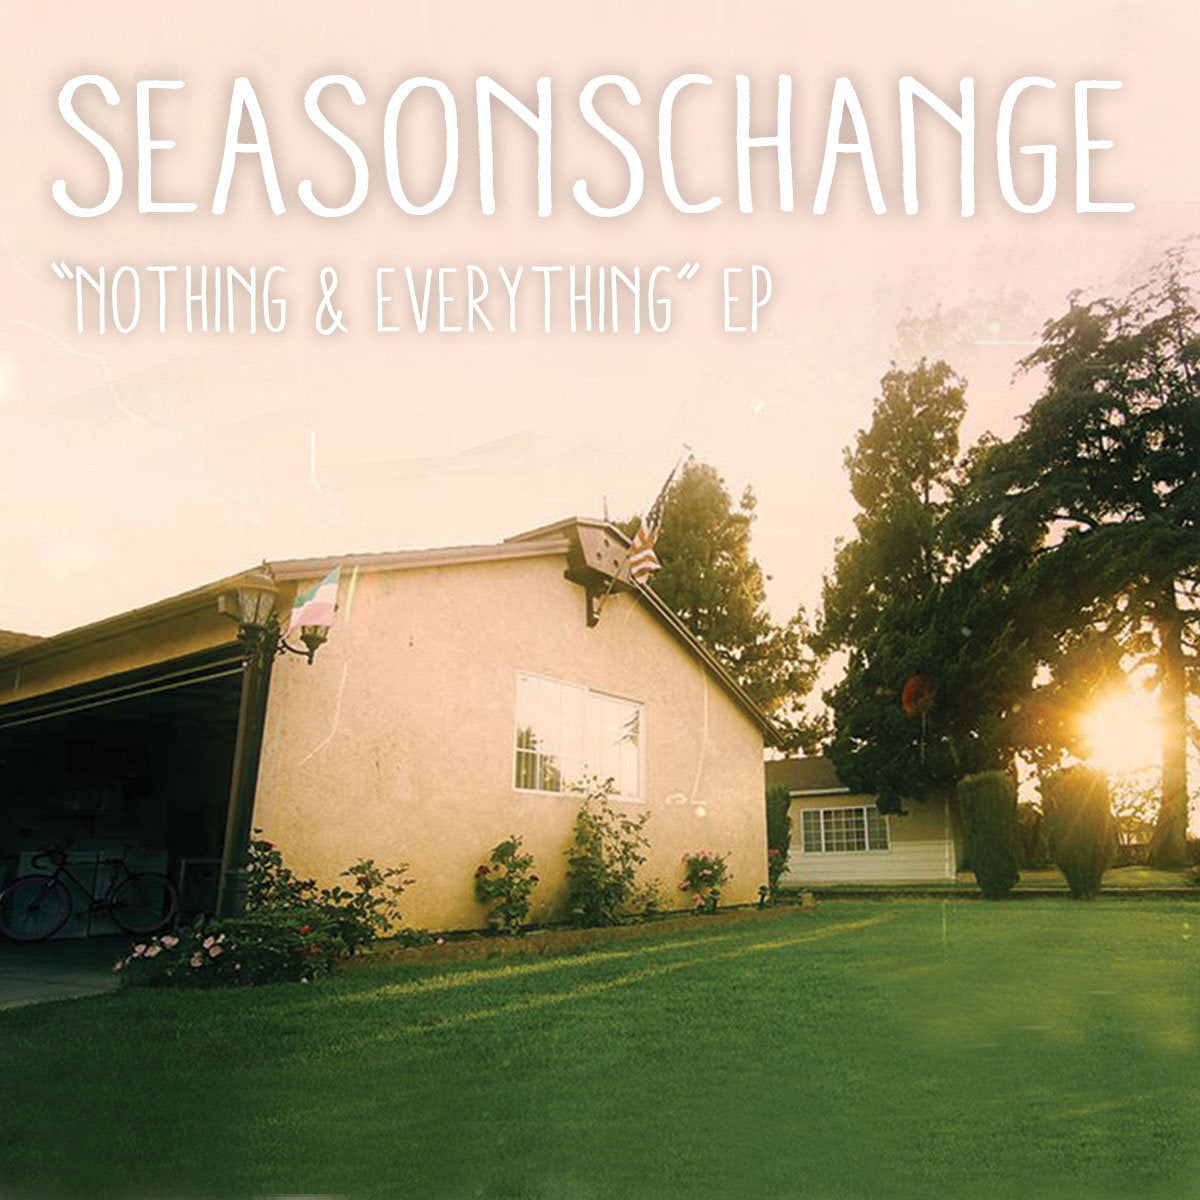 Seasons Change "Nothing & Everything" CD